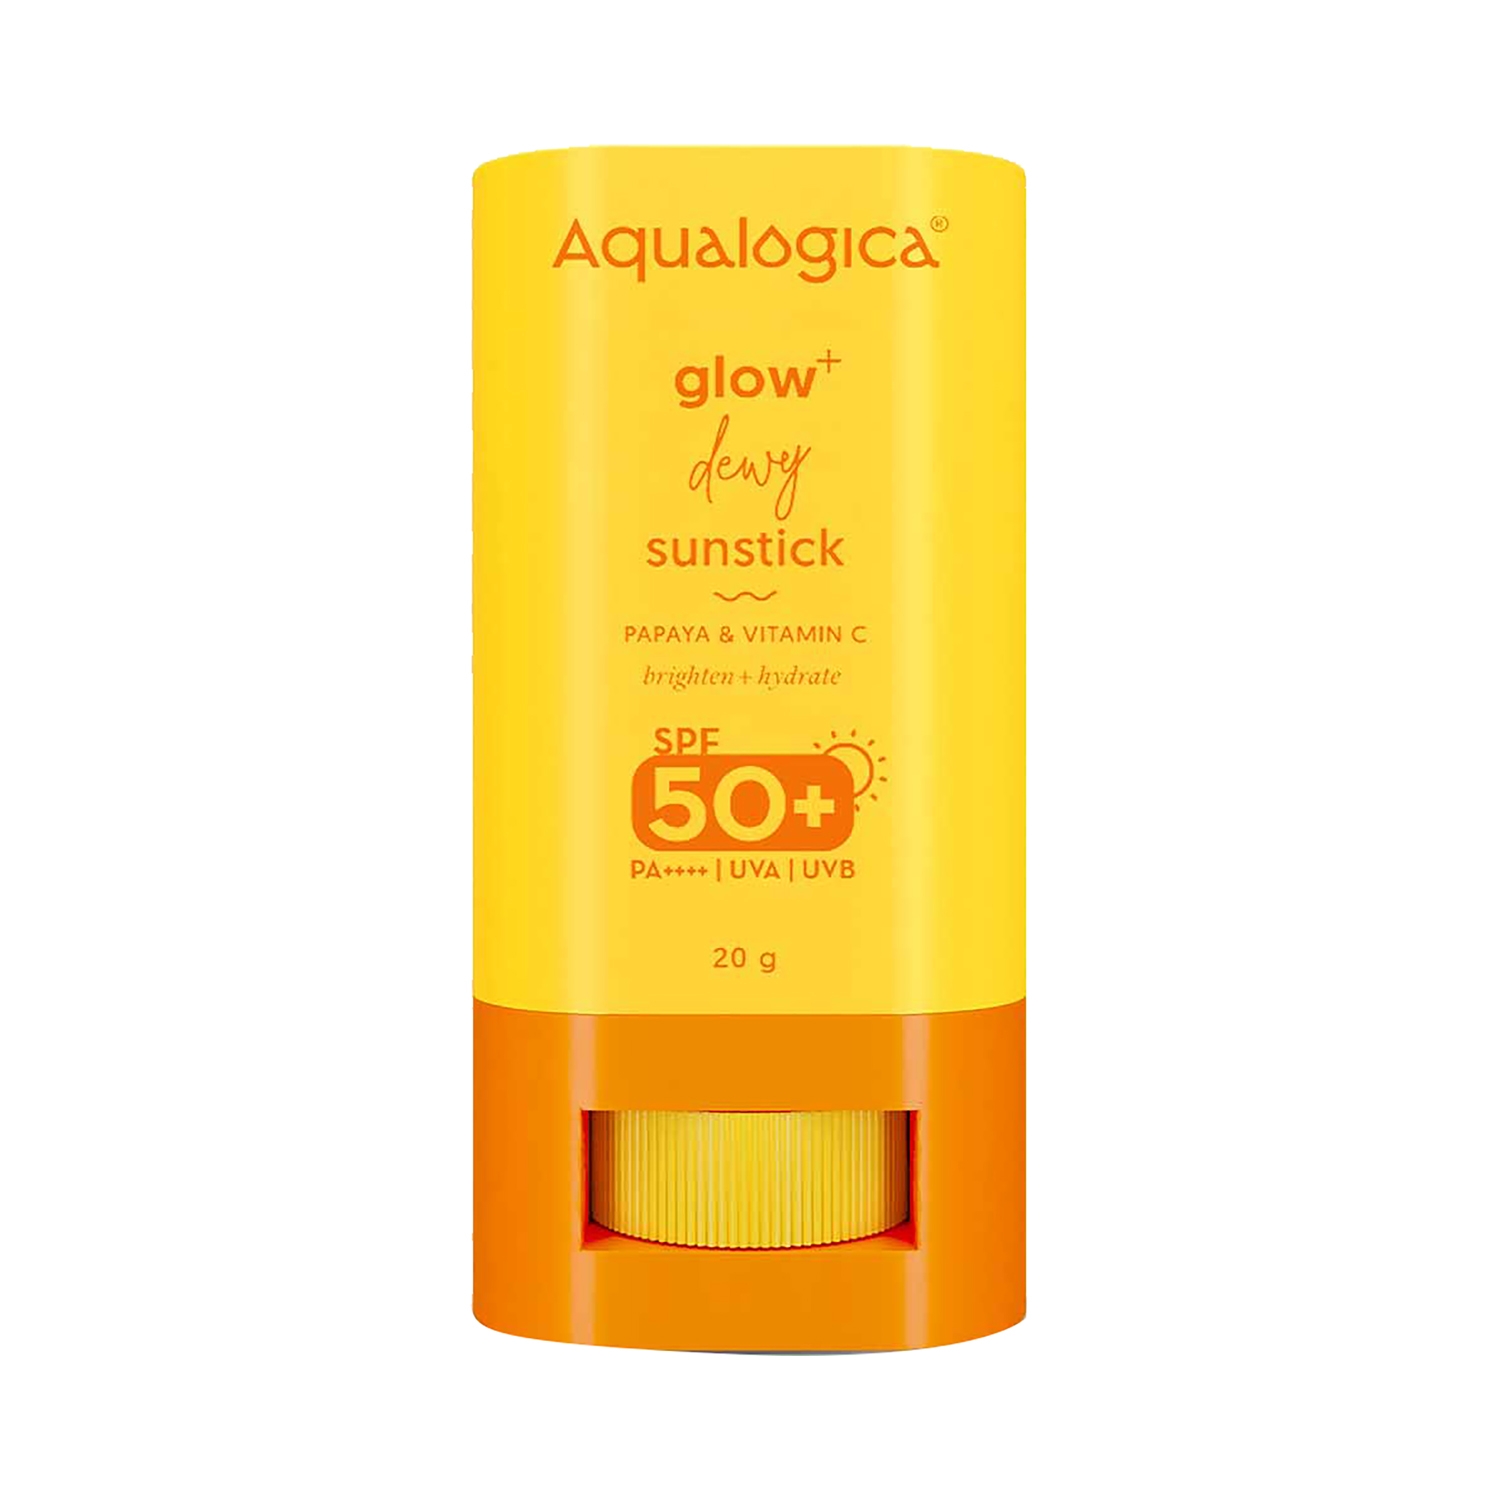 Aqualogica Glow+ Dewy Sunstick SPF 50 PA++++ With Papaya & Vitamin C (20g)